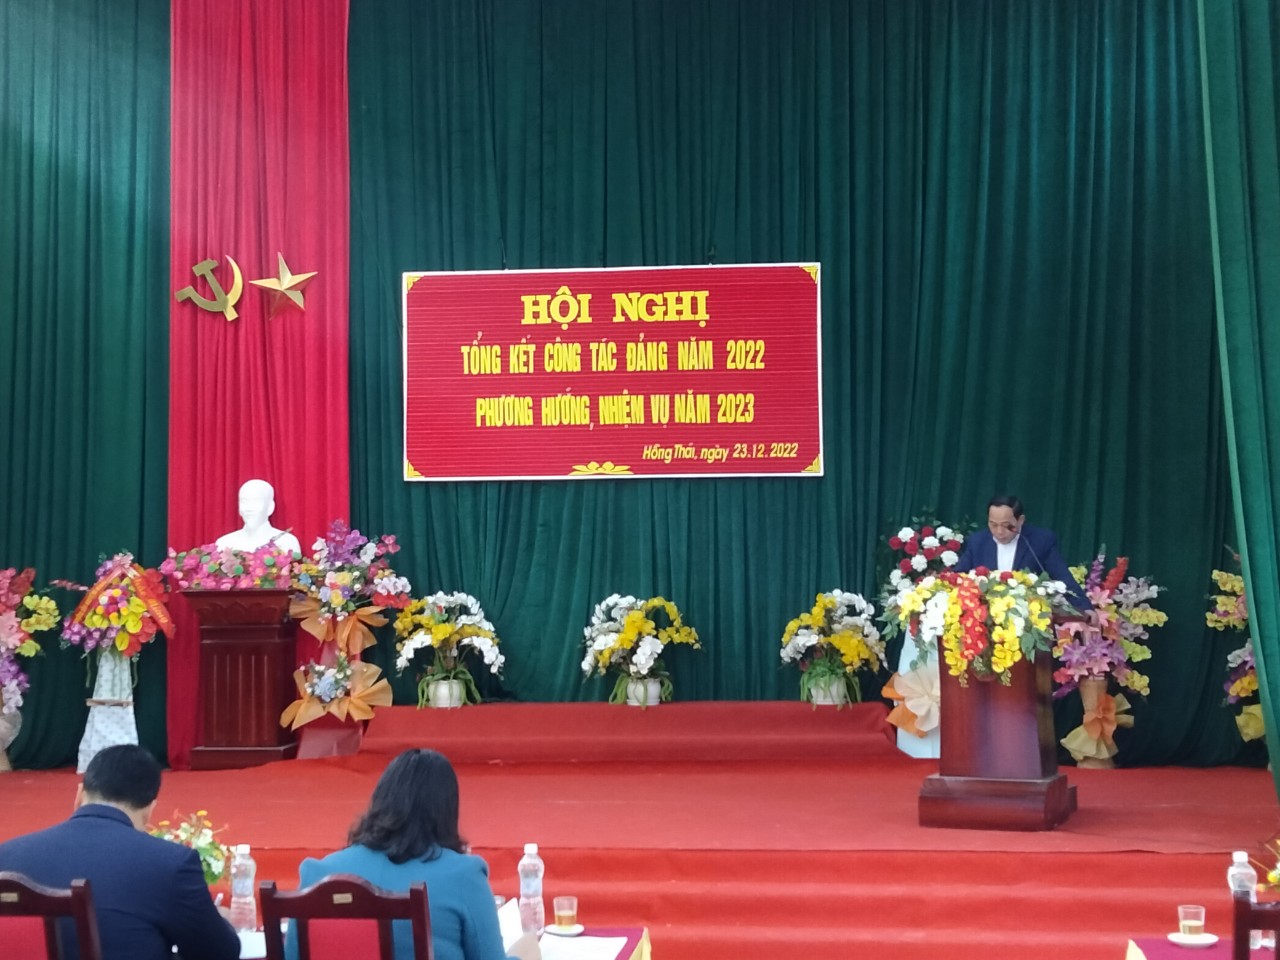 Đồng chí Lương Hoàng Đựng, Bí thư Đảng ủy, Chủ tịch UBND xã phái biểu khai mạc